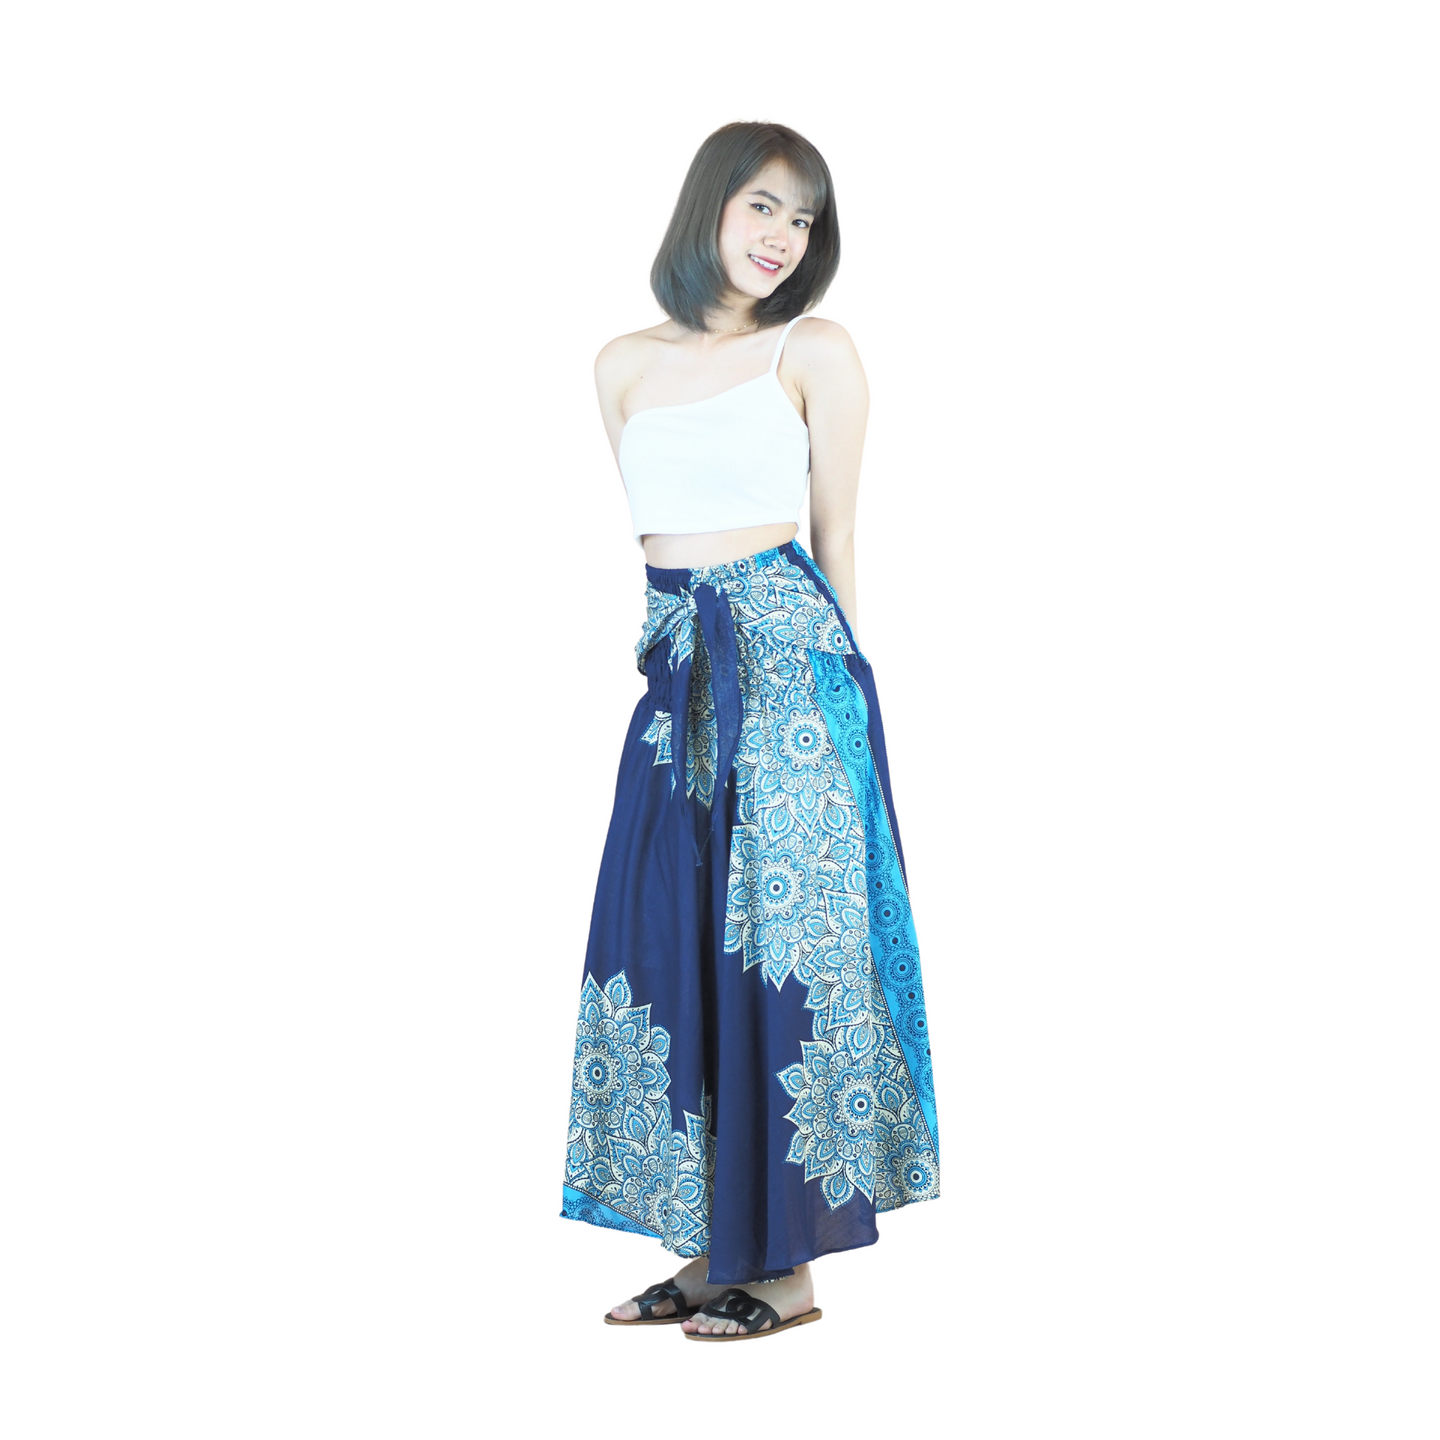 Muscari Mandala Women's Bohemian Skirt in Navy Blue SK0033 020263 03